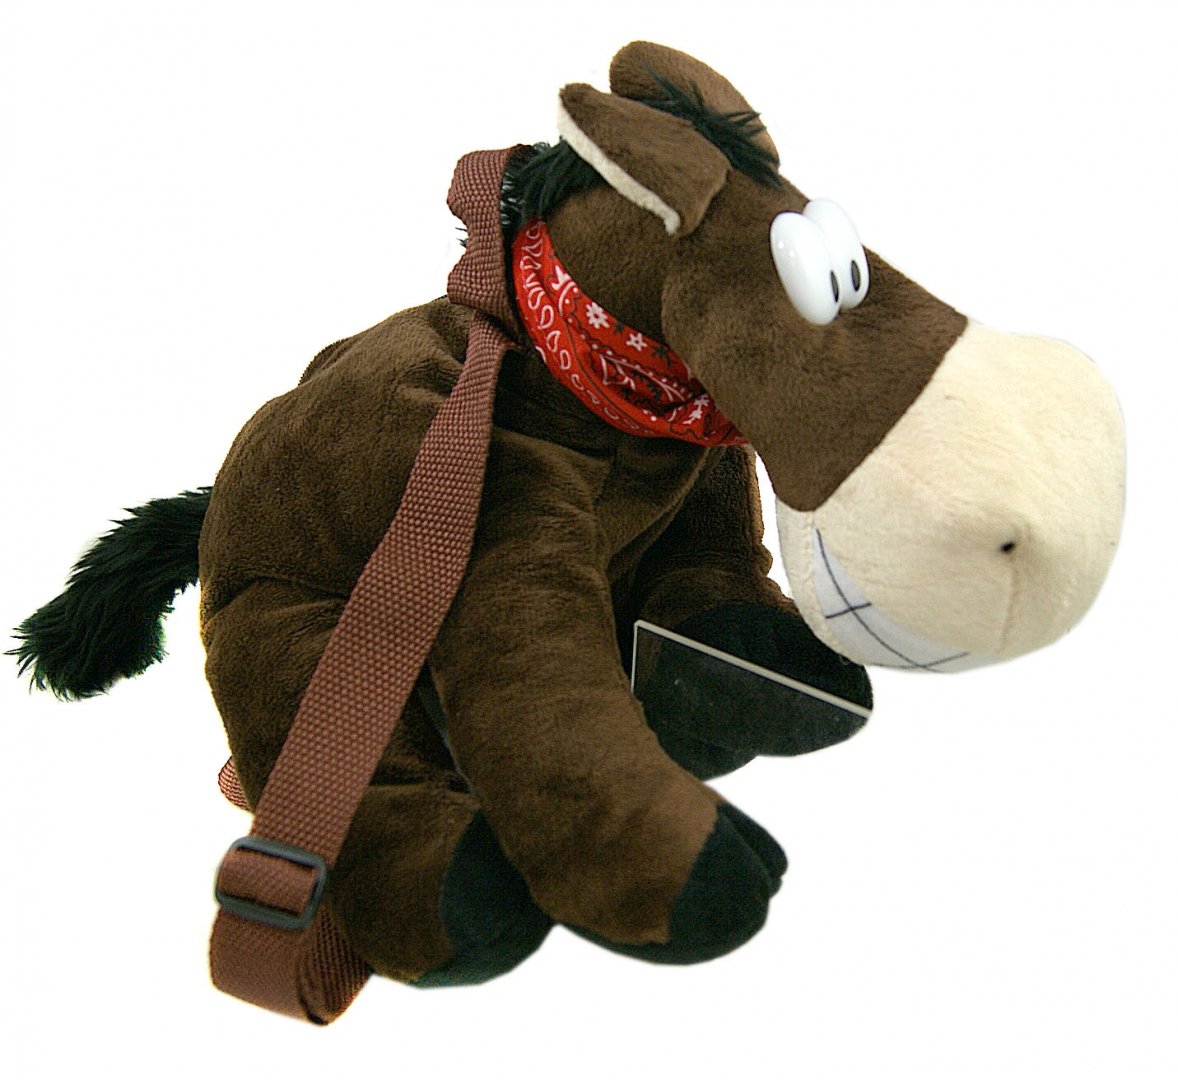 Иллюстрация 1 из 2 для Игрушка мягкая "Веселая лошадка". Рюкзак. 35 см (GS7406) | Лабиринт - игрушки. Источник: Лабиринт